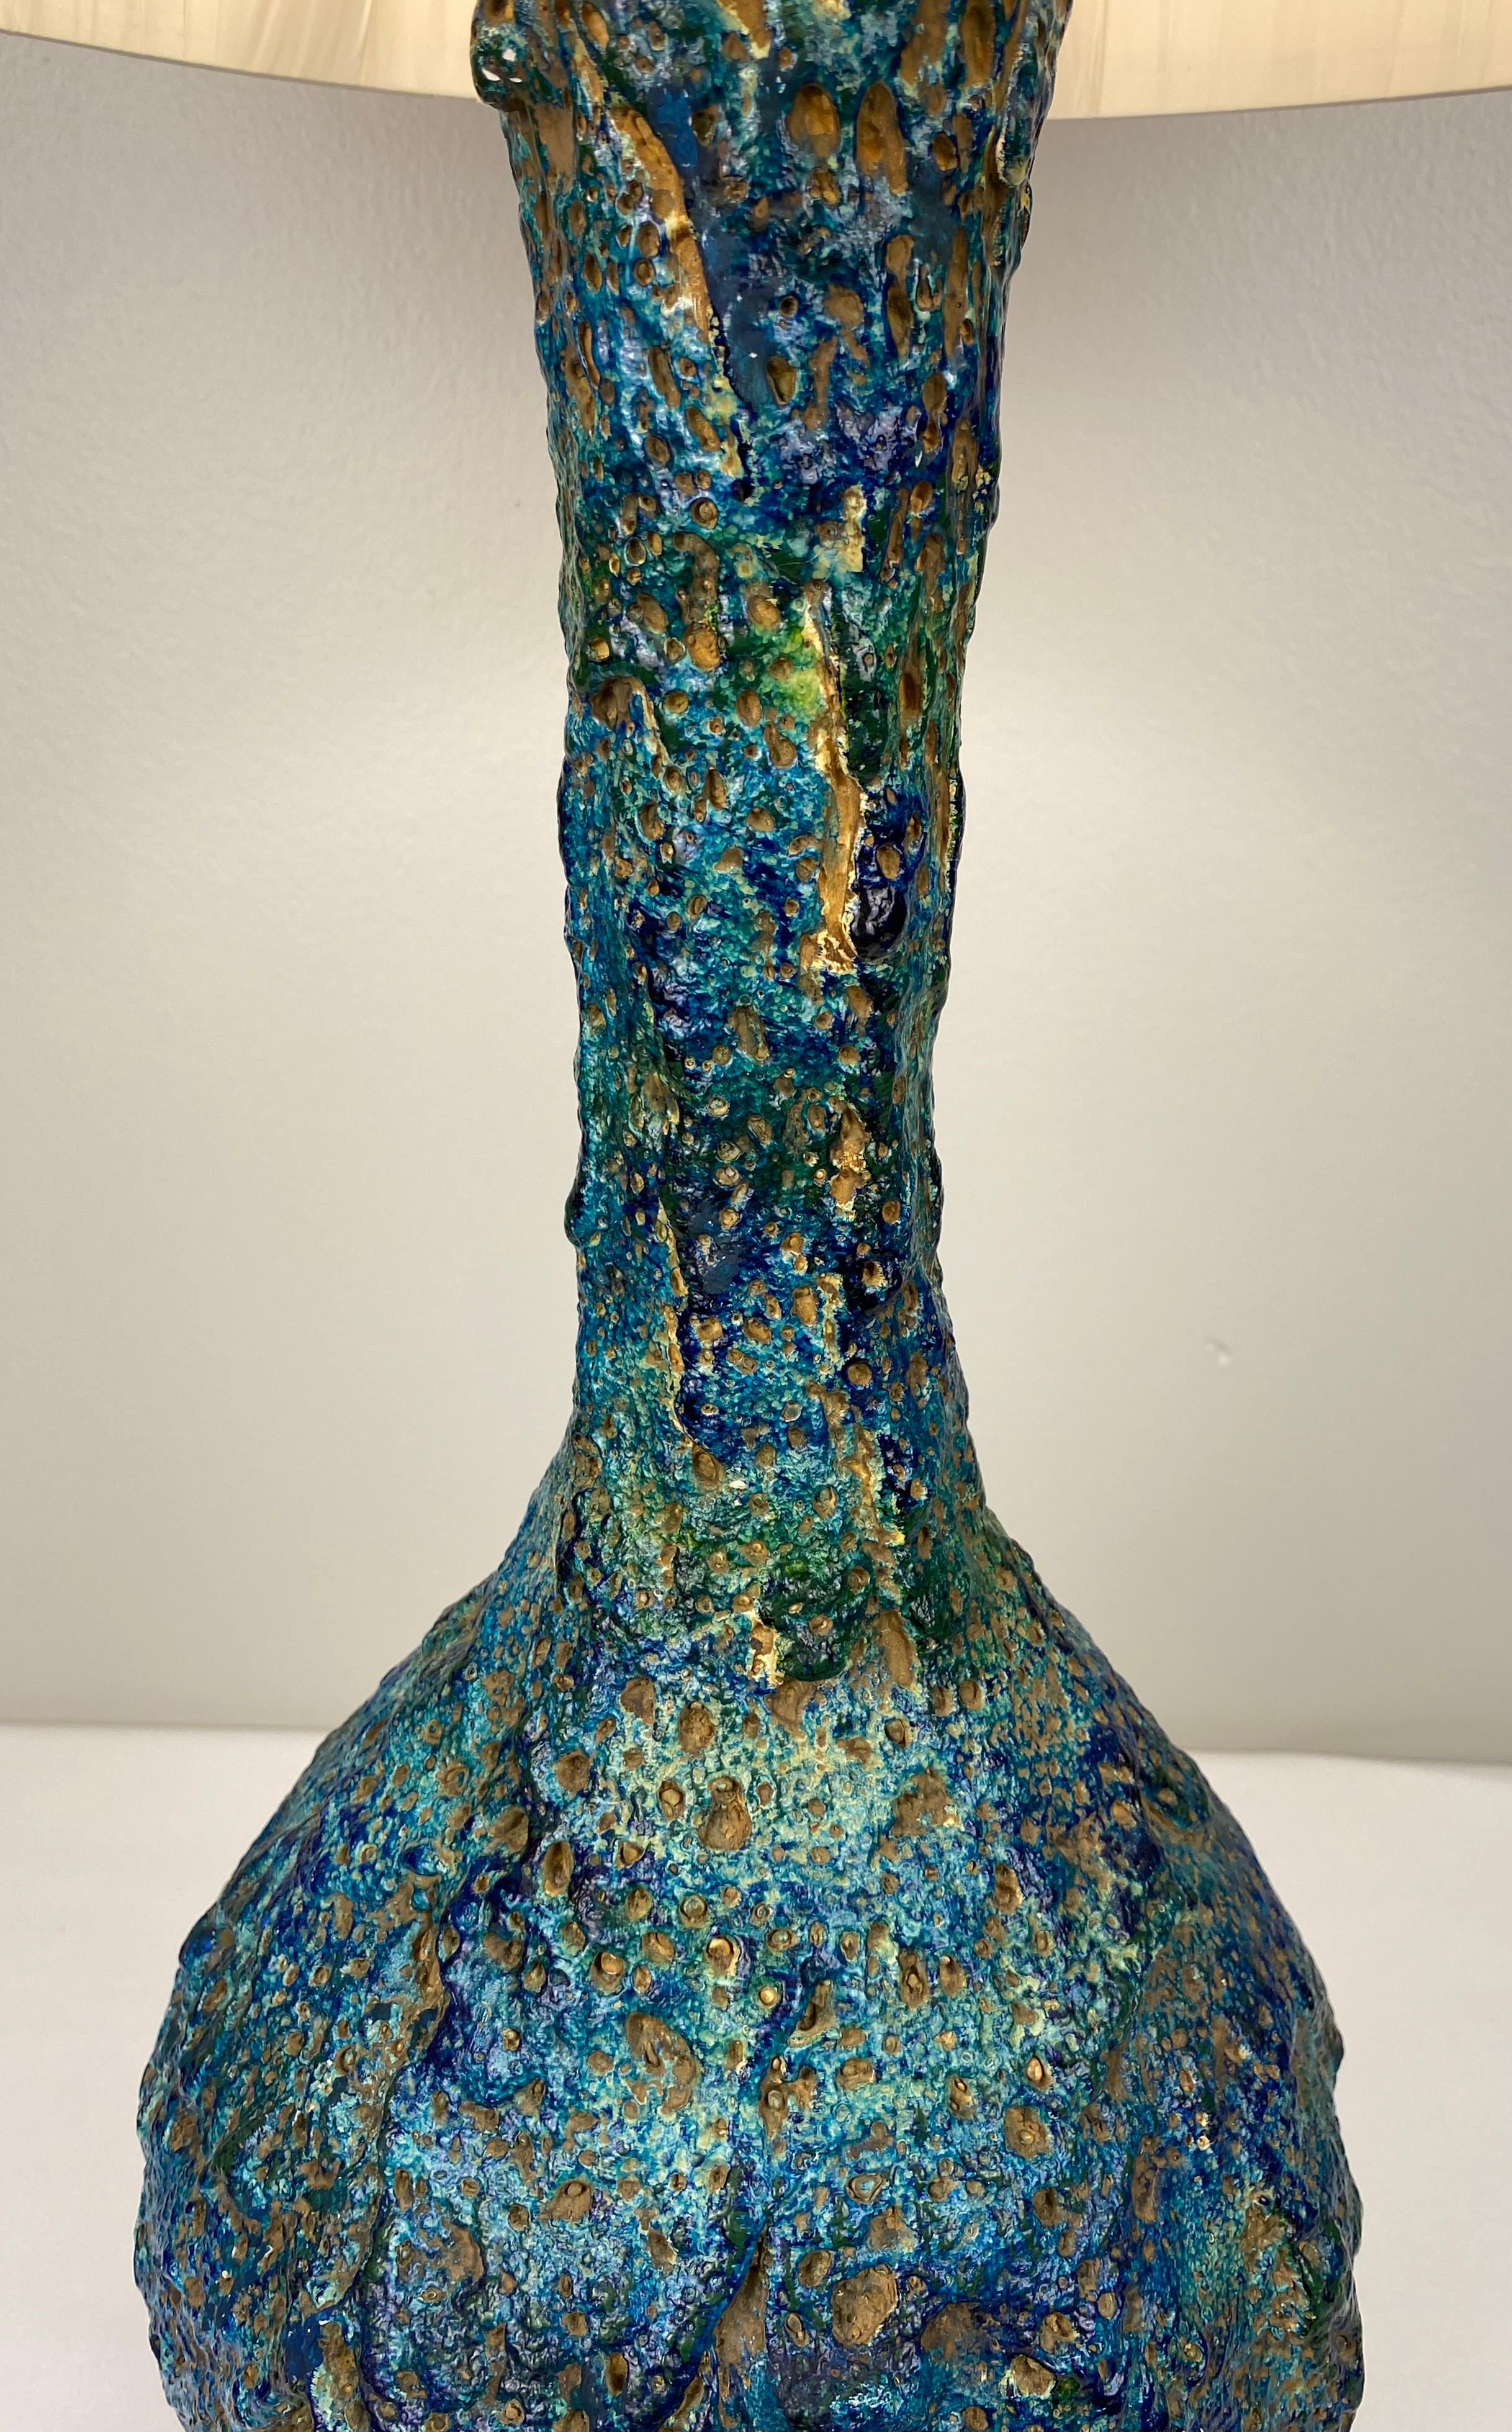 Große und sehr dekorative Keramik-Tischlampe aus Frankreich. Sehr attraktiv Mitte des Jahrhunderts moderne Keramik Tischlampe mit schönen blauen Farben und eine große Form. Diese Lampe hat eine bemerkenswerte skulpturale Arbeit.  Ziemlich